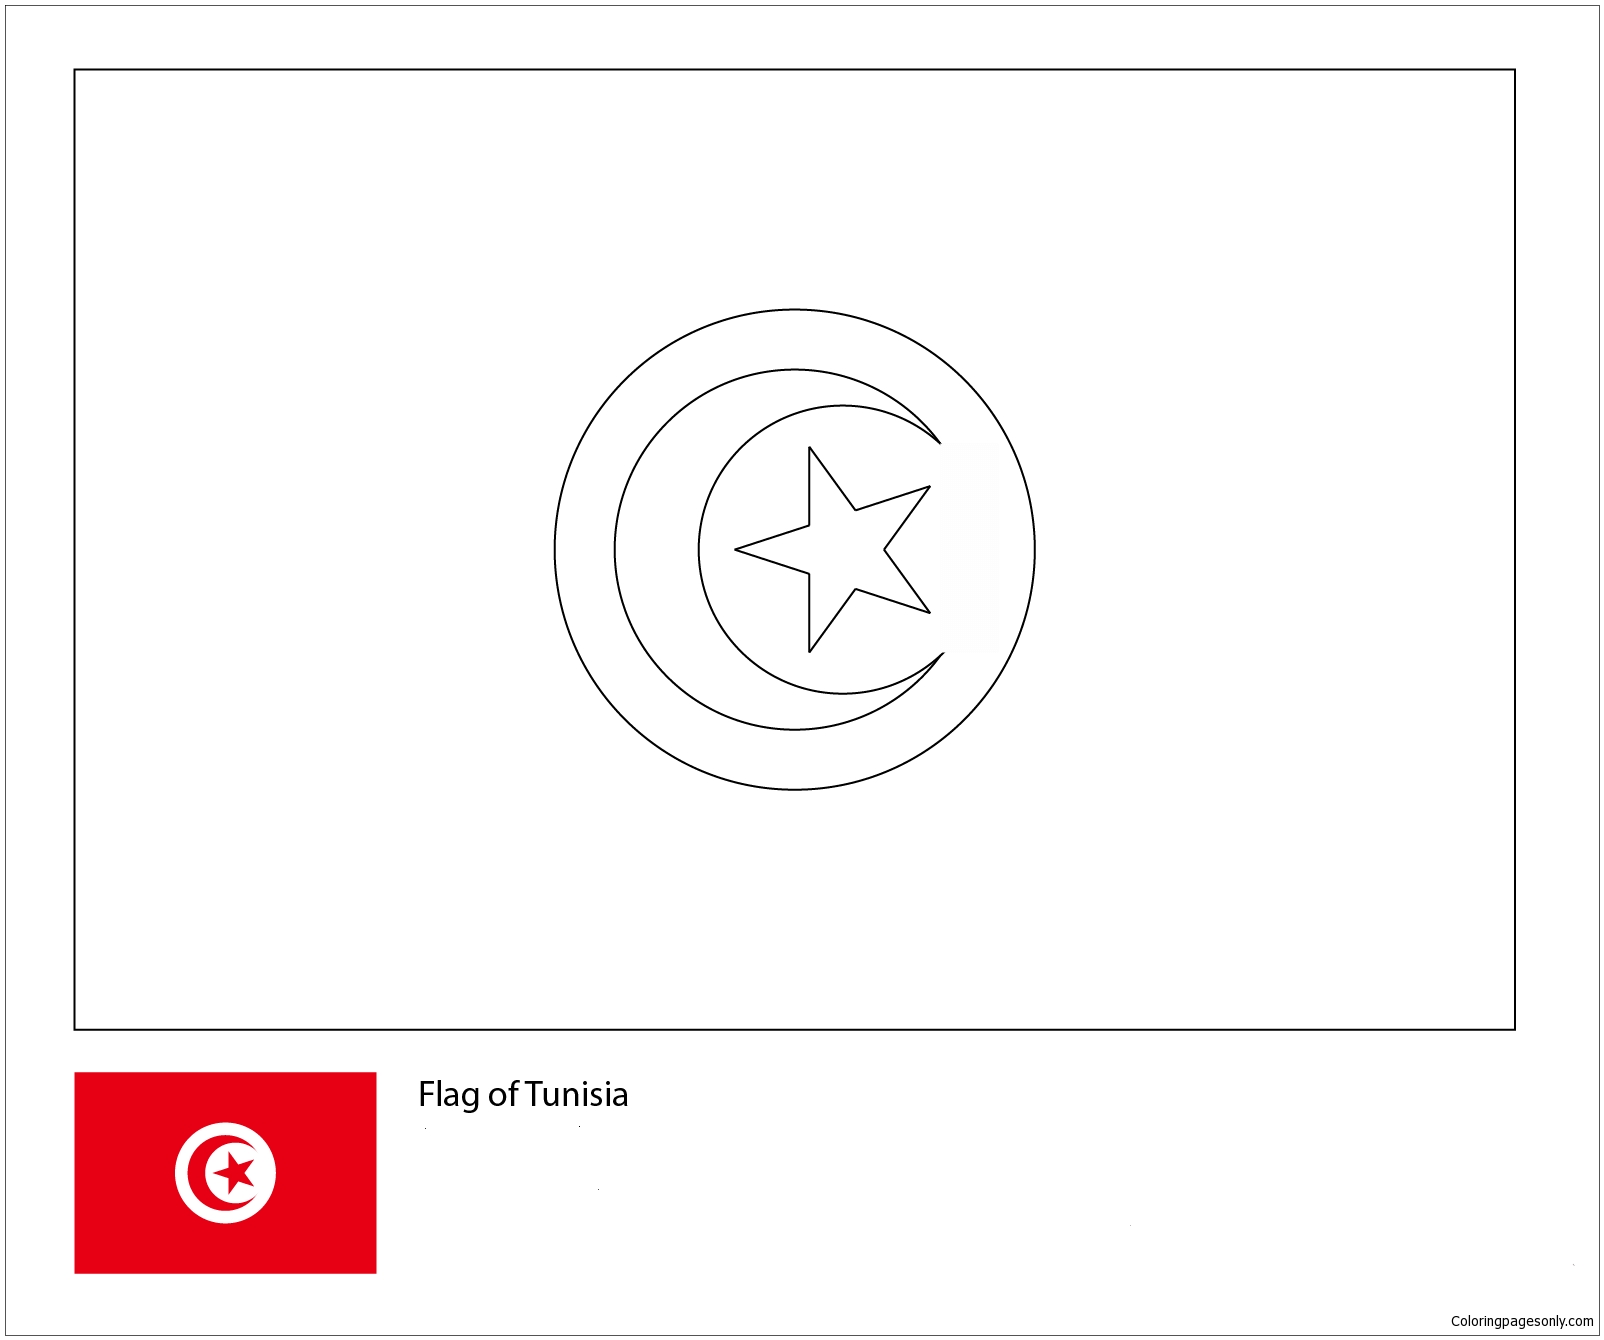 Bandeira da Tunísia-Copa do Mundo 2018 from Bandeiras da Copa do Mundo 2018